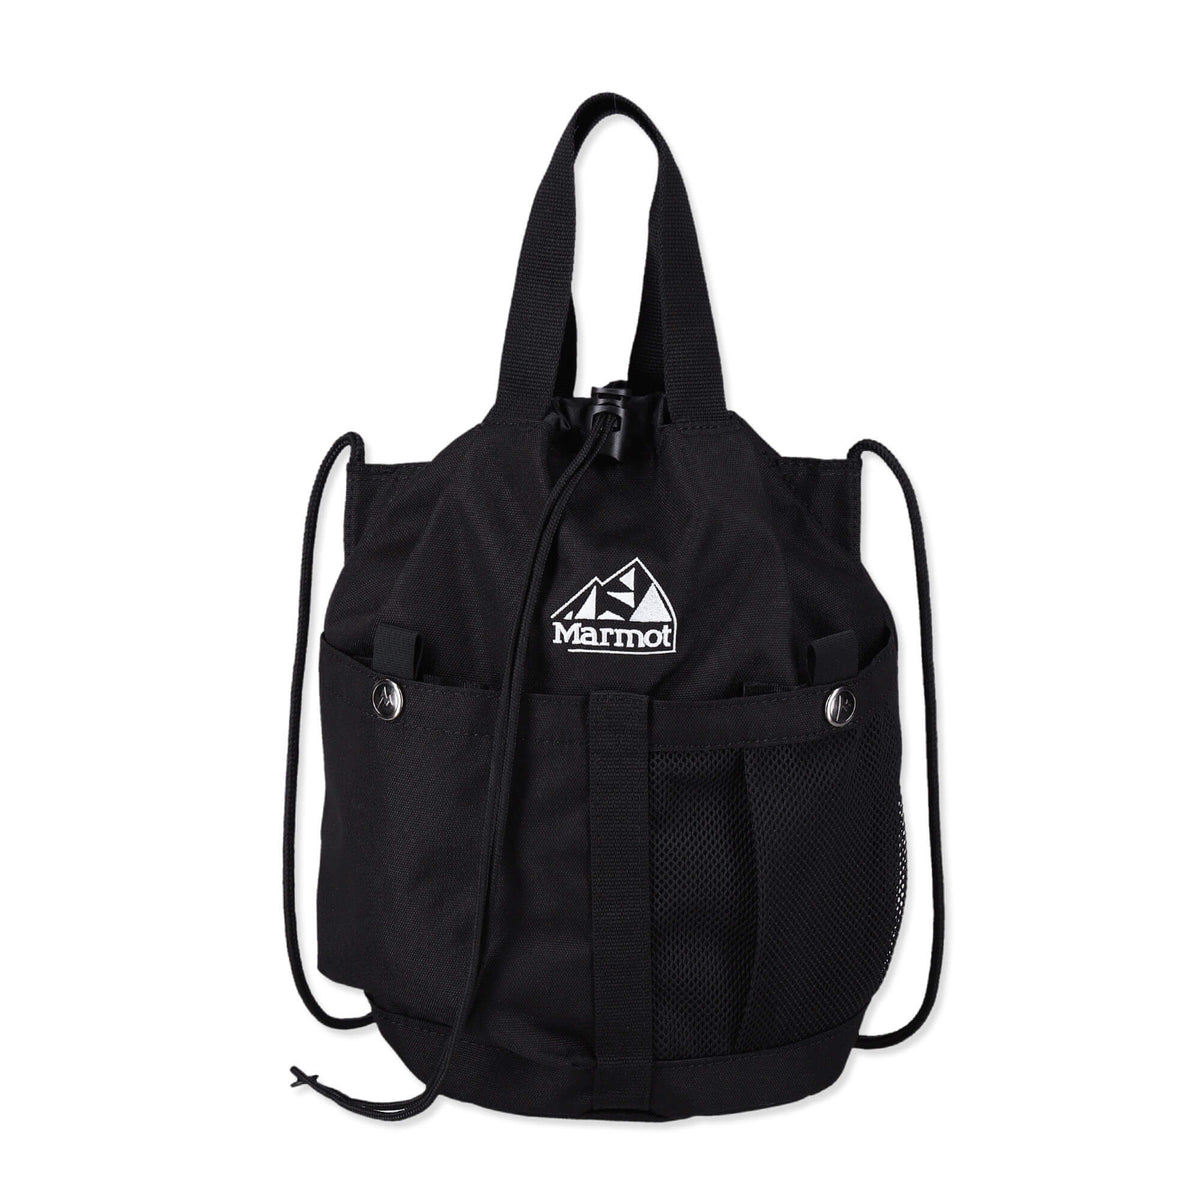 KINCHAKU Shoulder Bag(キンチャクショルダーバッグ)